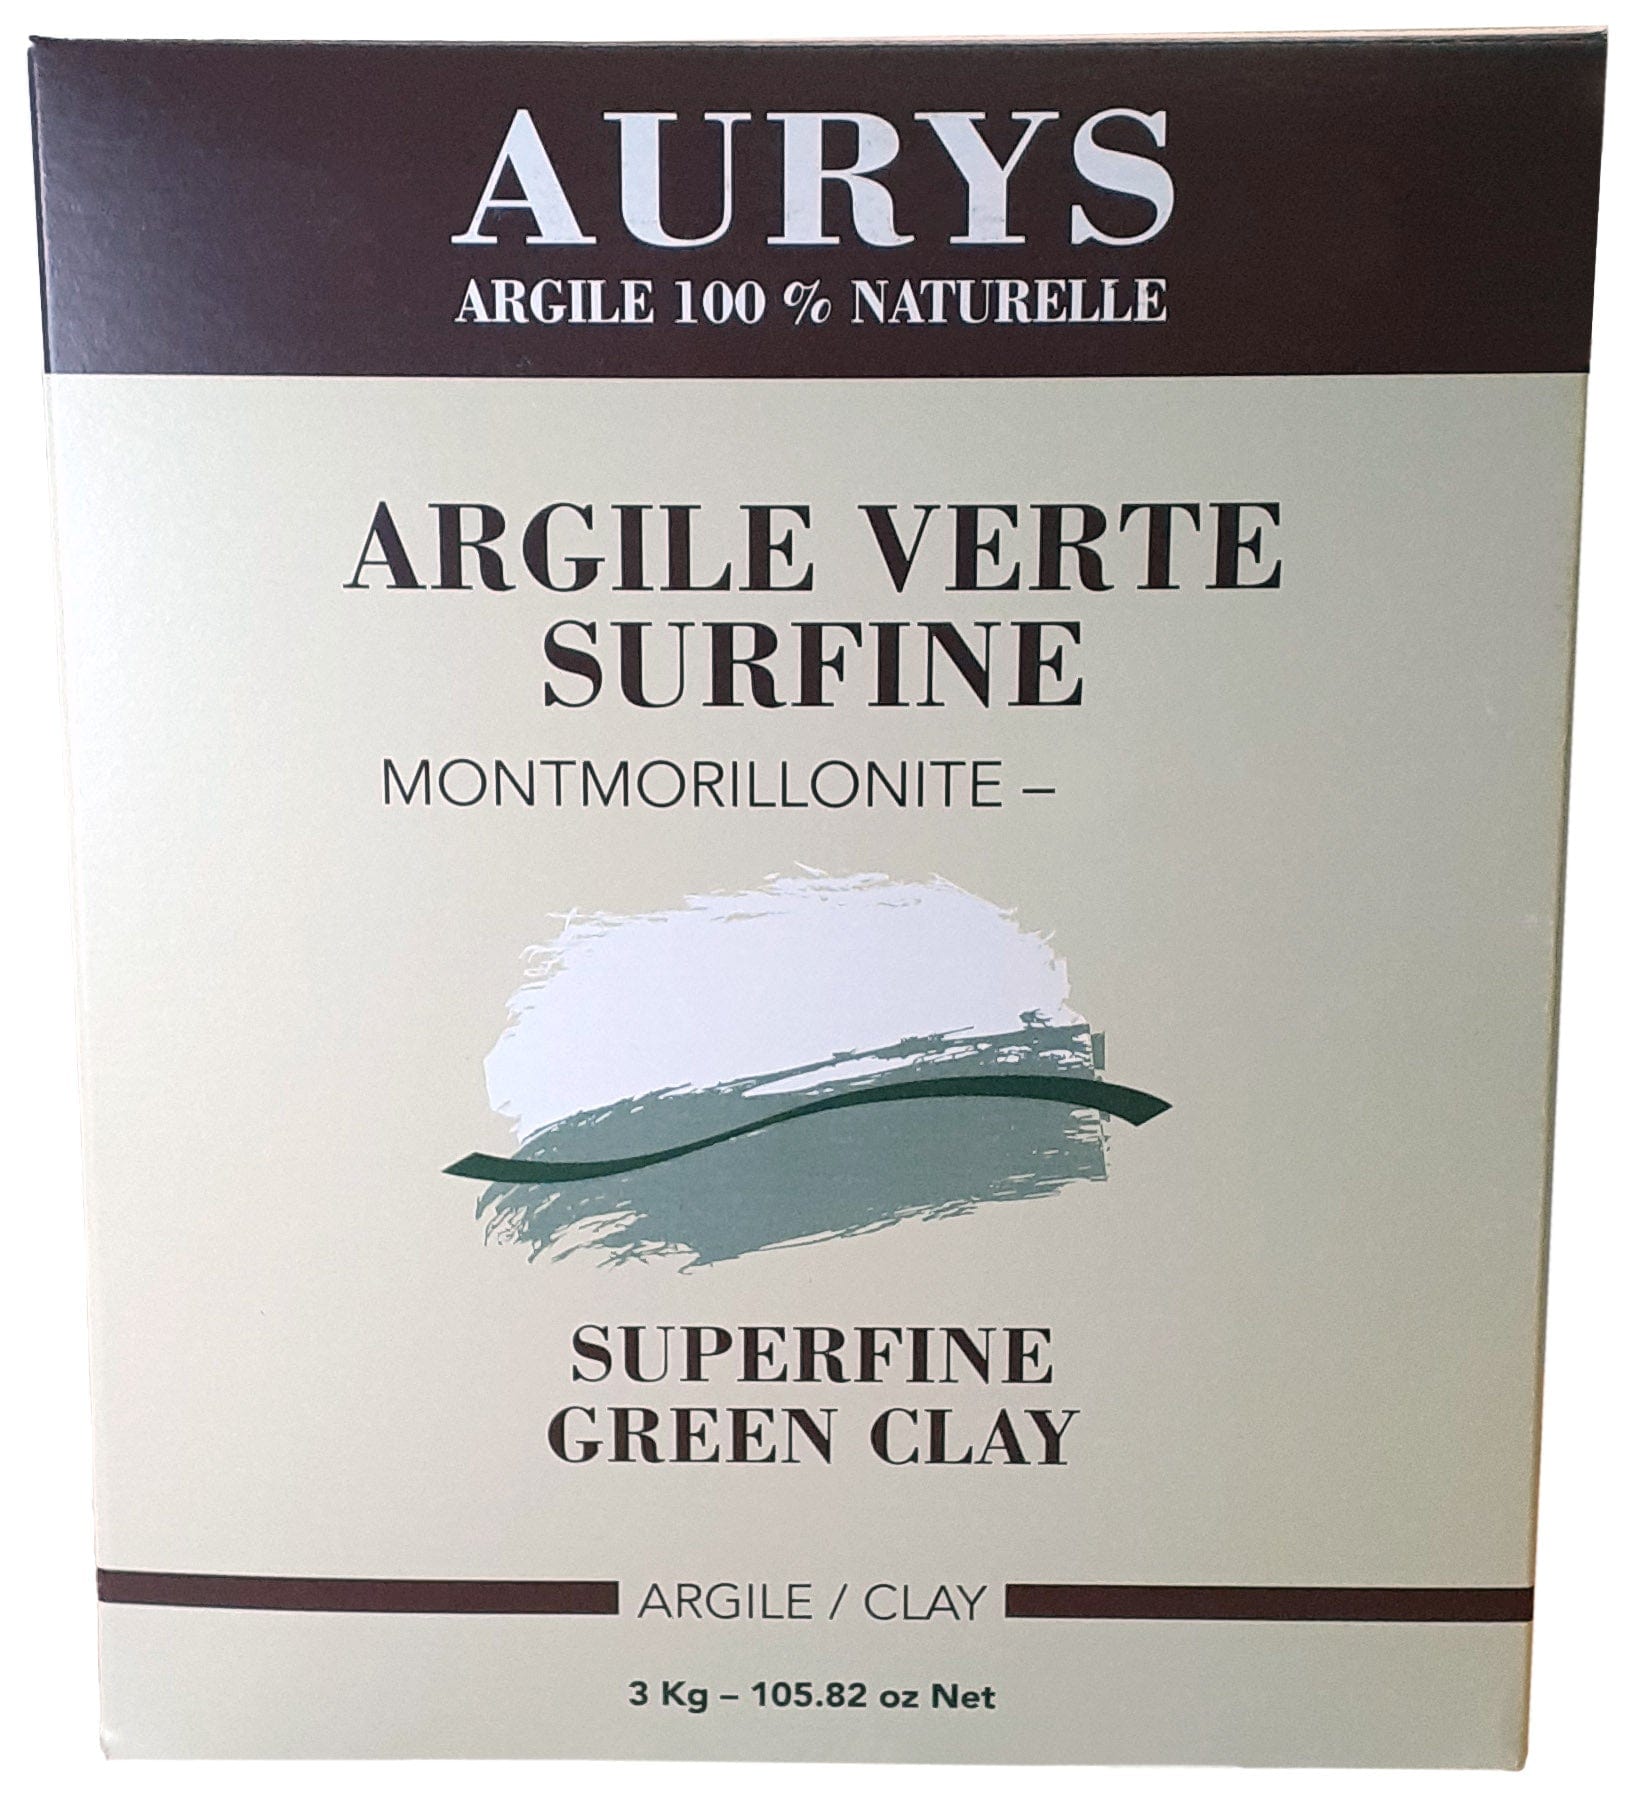 AURYS Soins & beauté Argile verte surfine 3kg